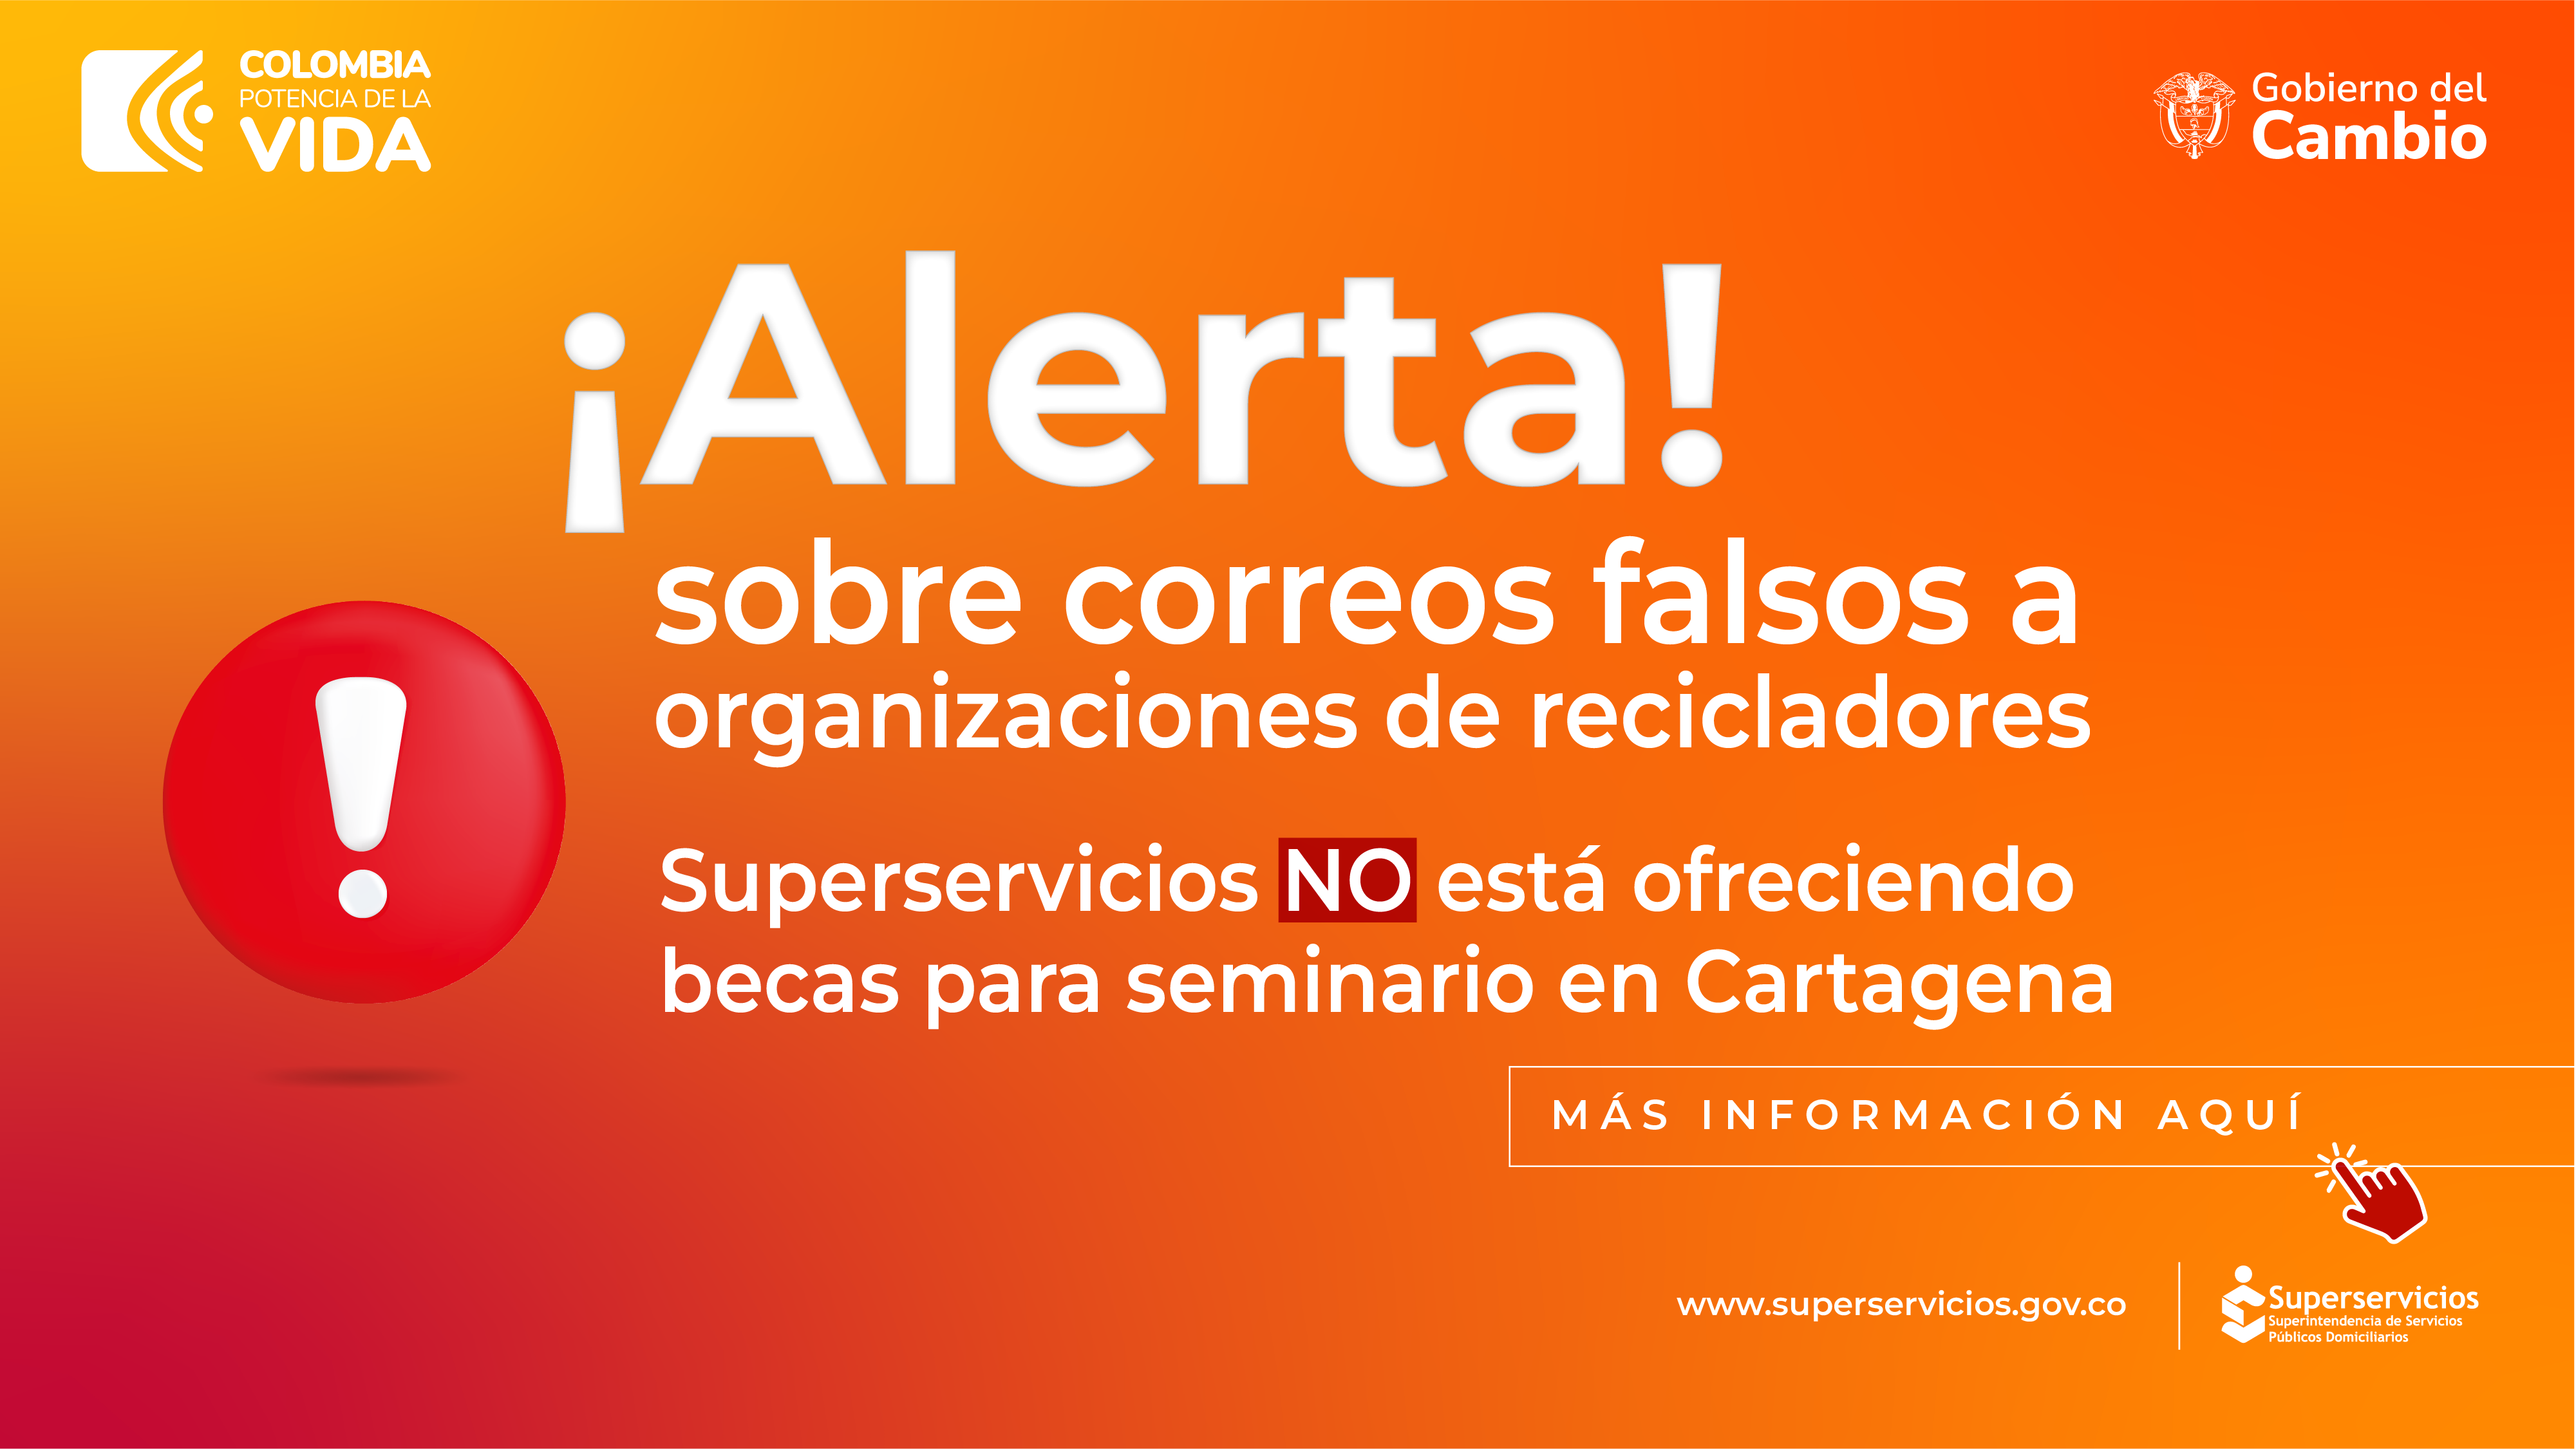 Superservicios no está ofreciendo becas para seminario en Cartagena
